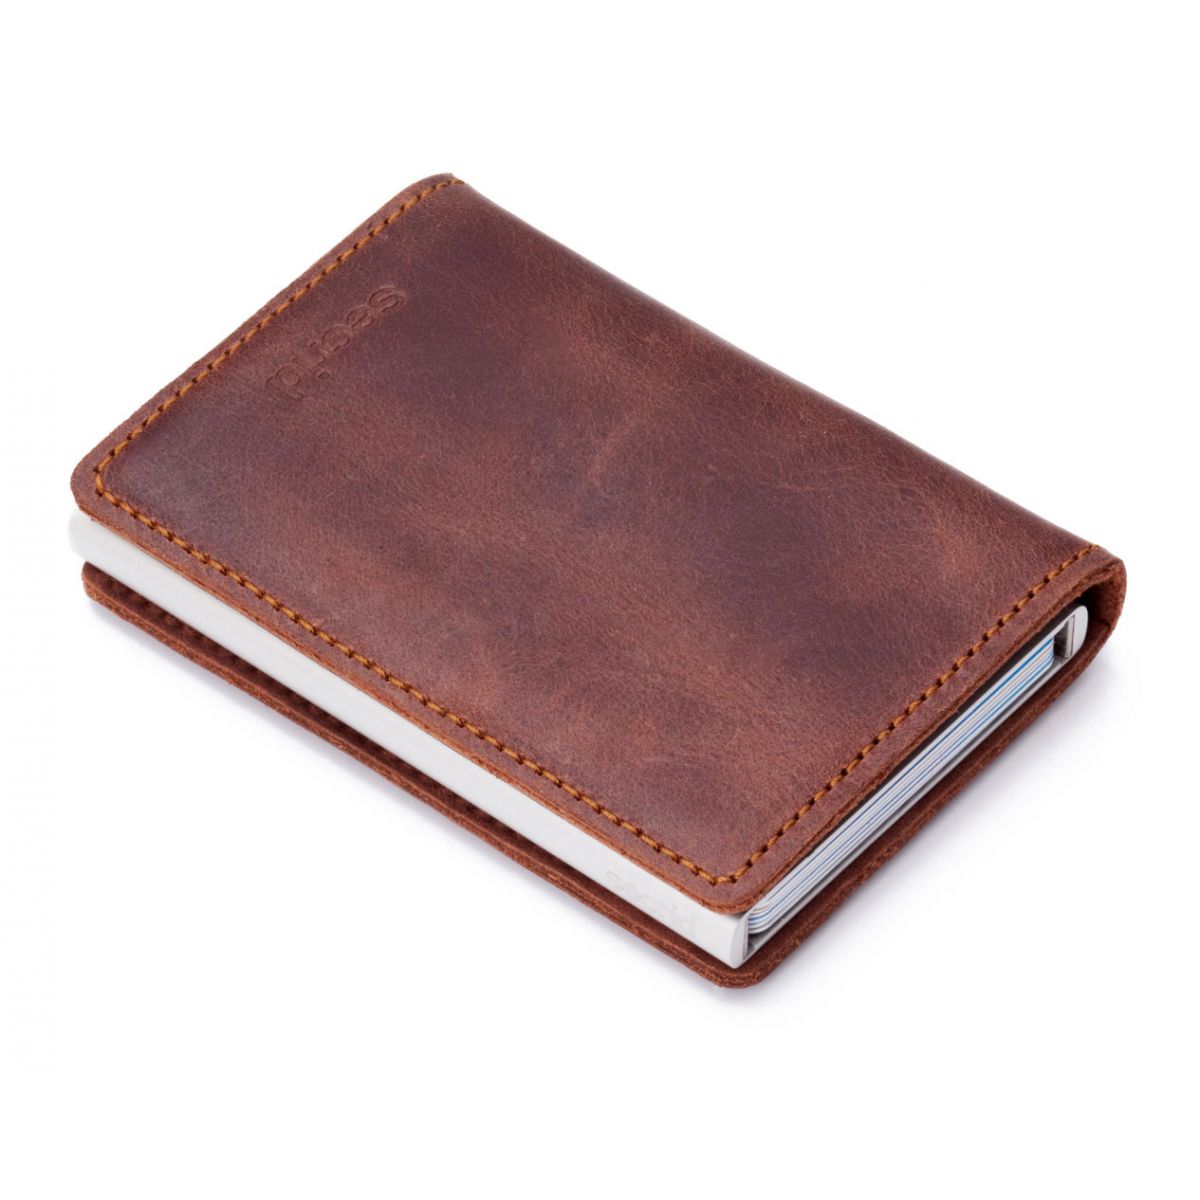 Secrid slim wallet leather vintage brown- SECRID - product code ...